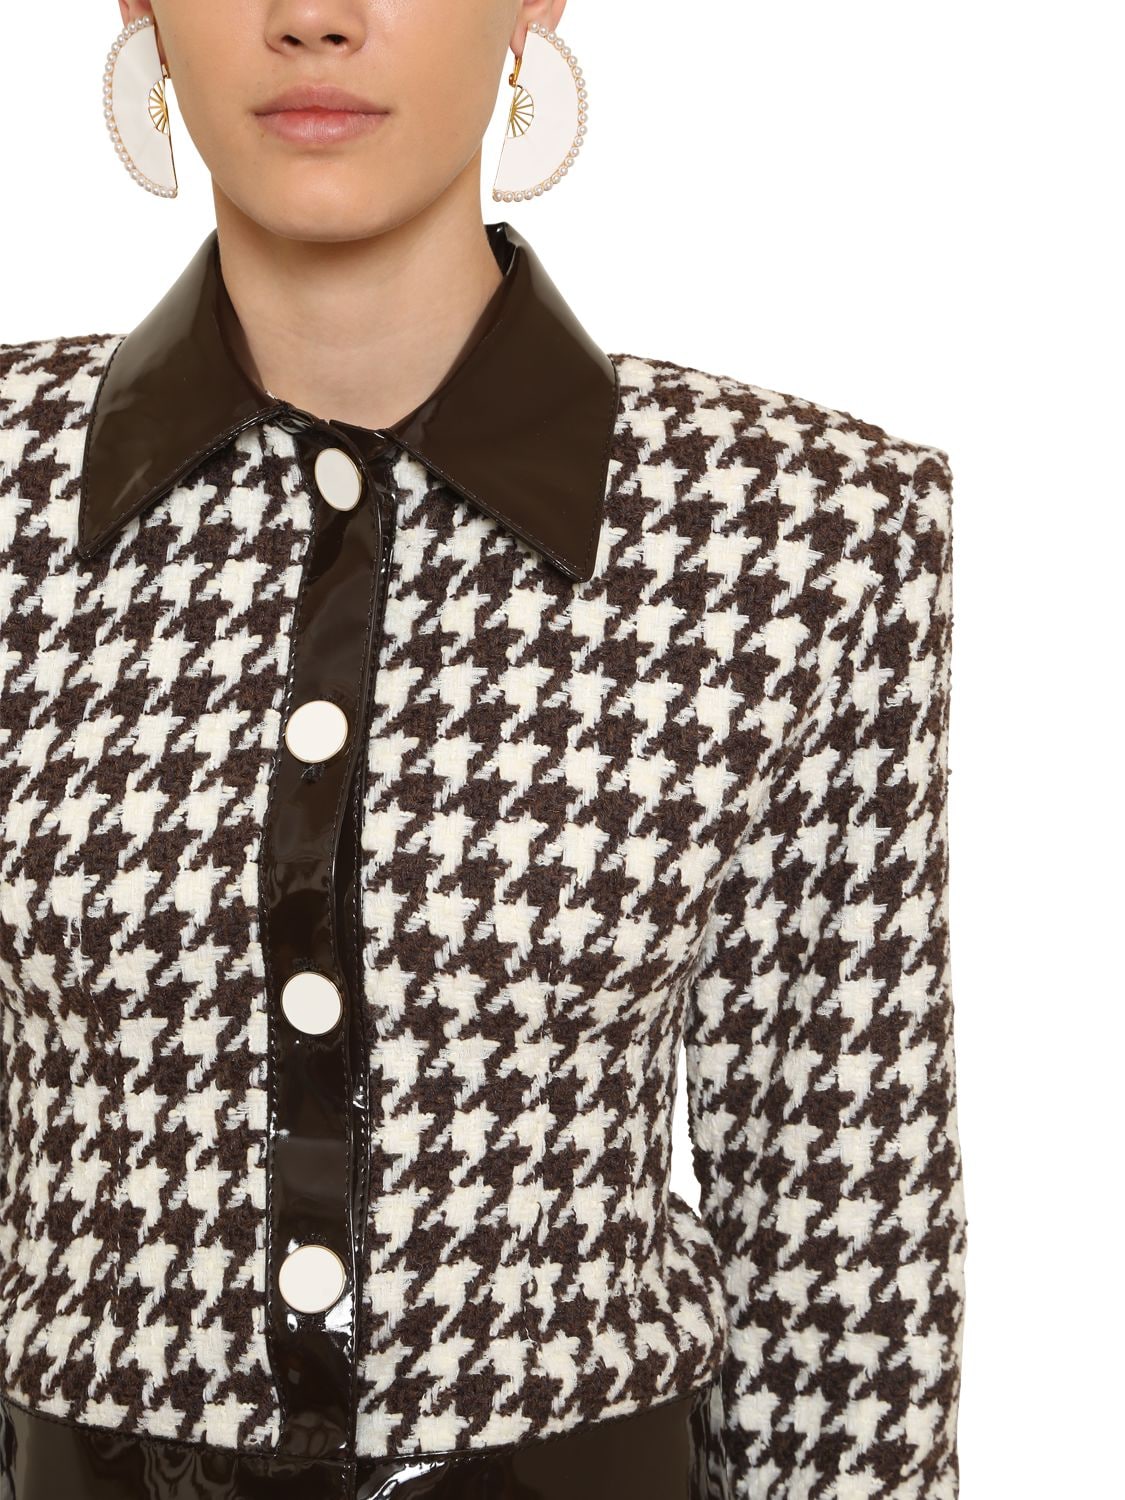 Rowen Rose Exclusive Wool Houndstooth Tweed Jacket In Brown | ModeSens